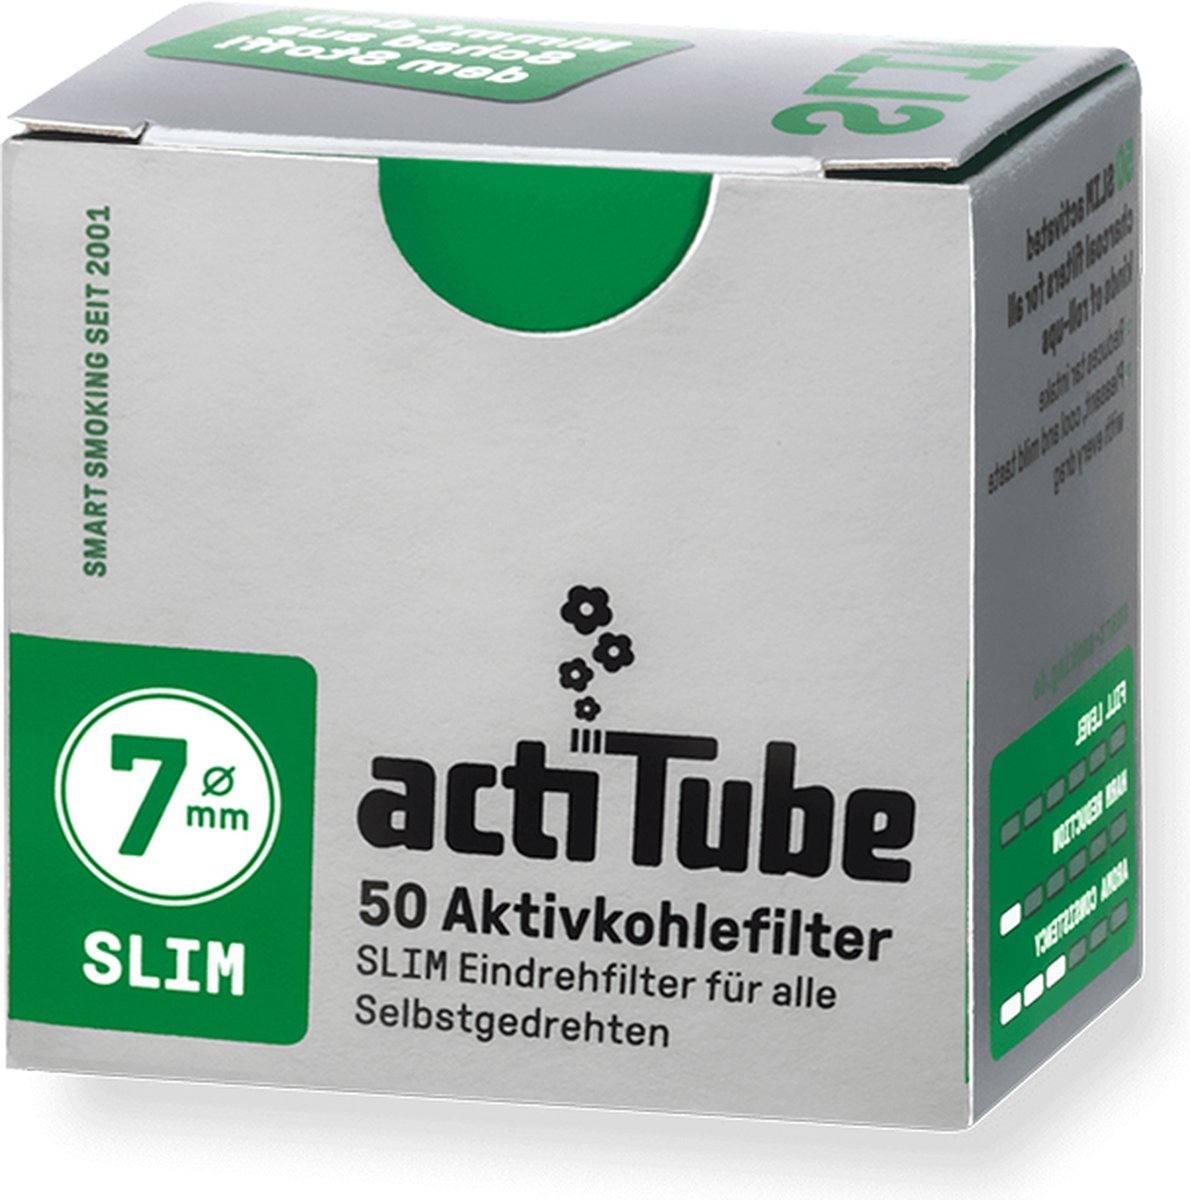 Acheter ActiTube - Filtre à charbon actif Extra Slim, 6mm, 50 pièces